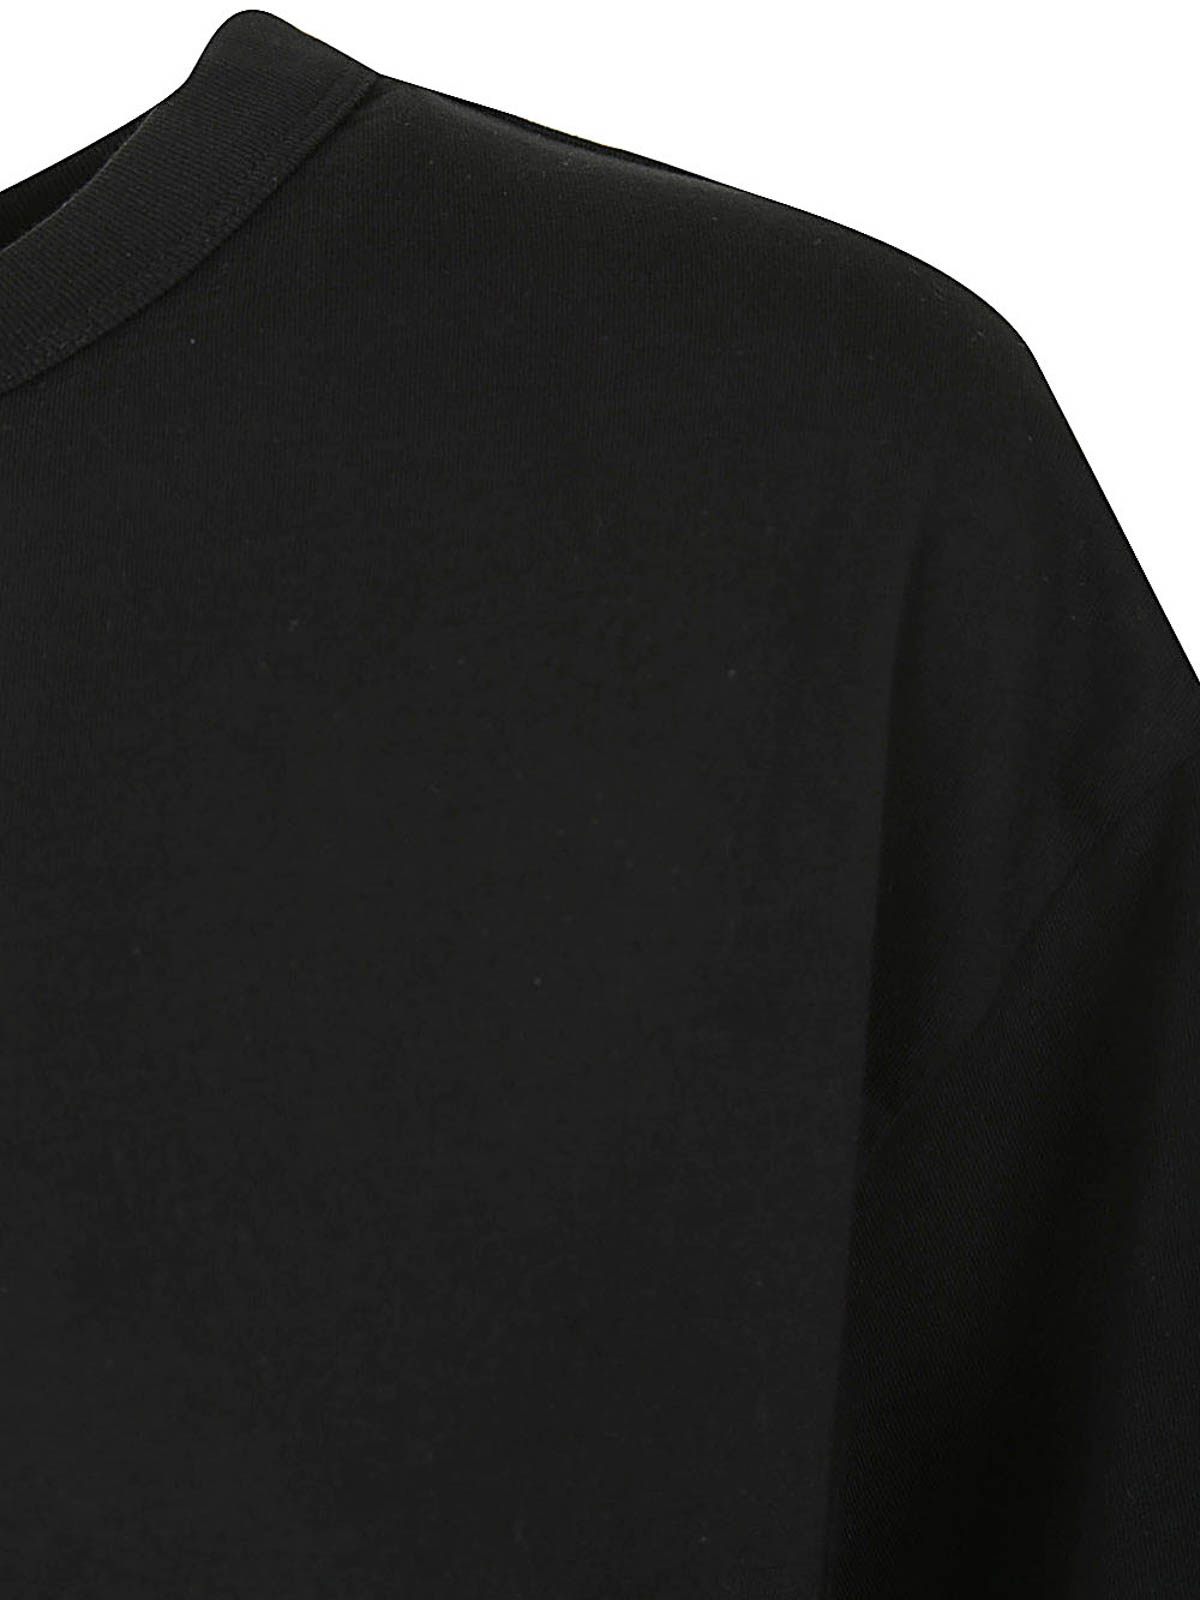 Shop Dries Van Noten Hegels T-shirt In Black